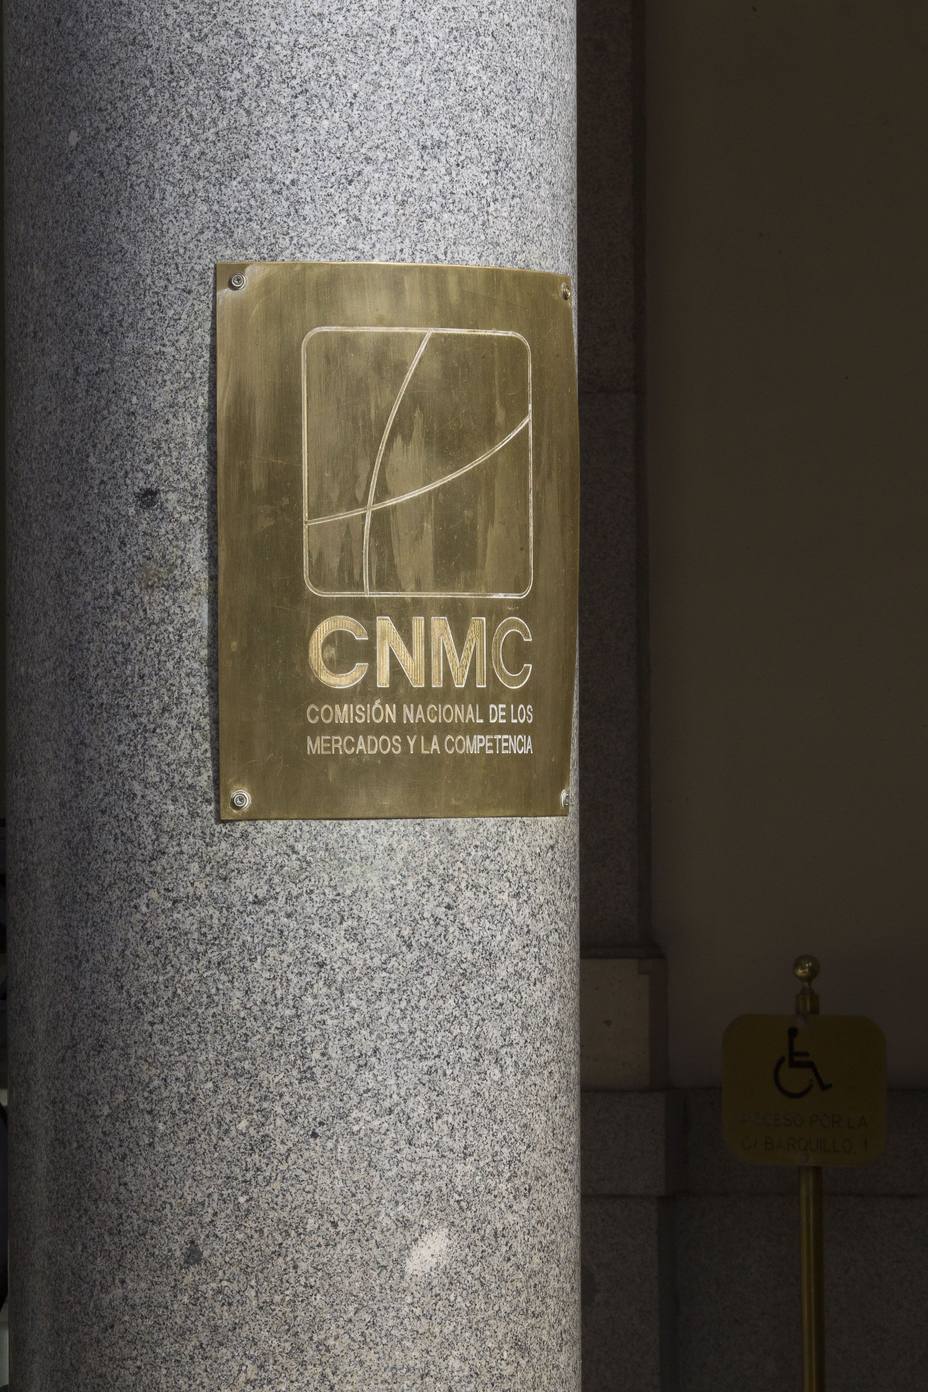 La CNMC investigó 21 empresas en el último trimestre del año